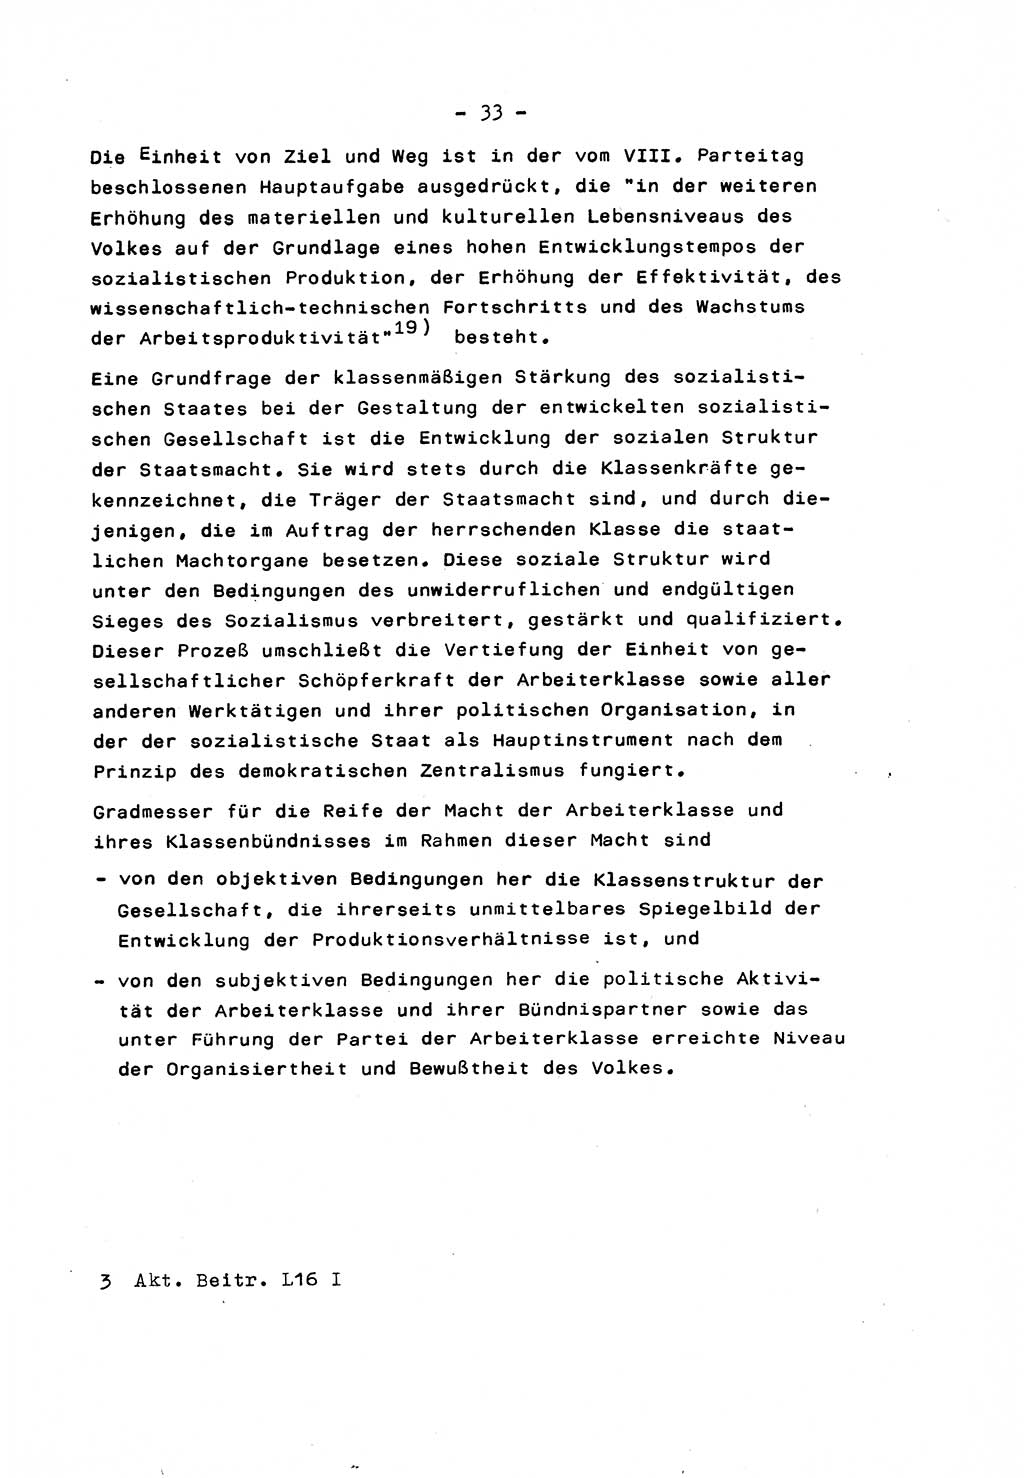 Marxistisch-leninistische Staats- und Rechtstheorie [Deutsche Demokratische Republik (DDR)] 1975, Seite 33 (ML St.-R.-Th. DDR 1975, S. 33)